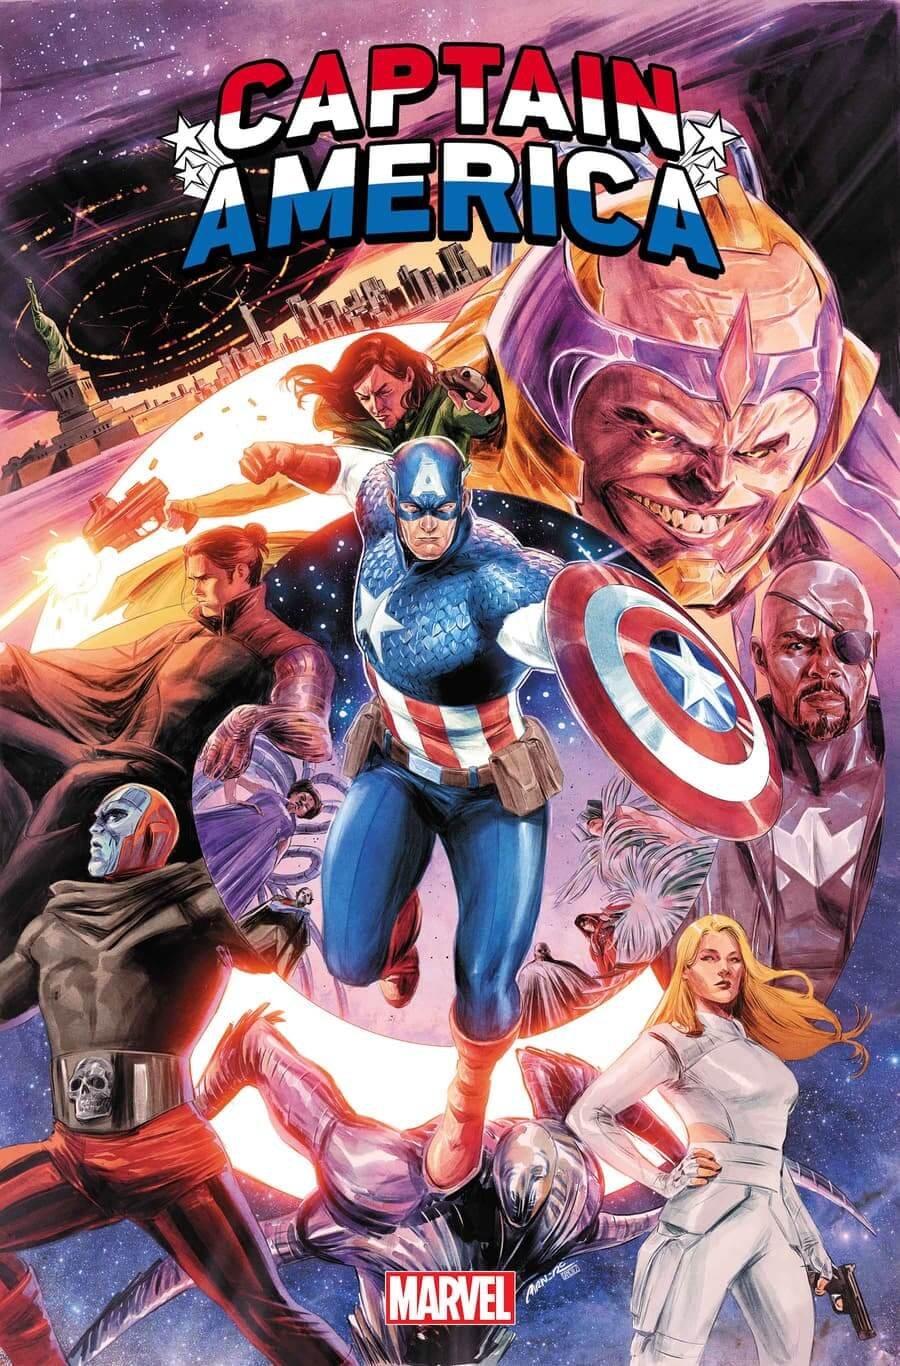 Couverture de Captain America : Finale, conclusion de la série Steve Rogers après la guerre froide, par Carmen Carnero.